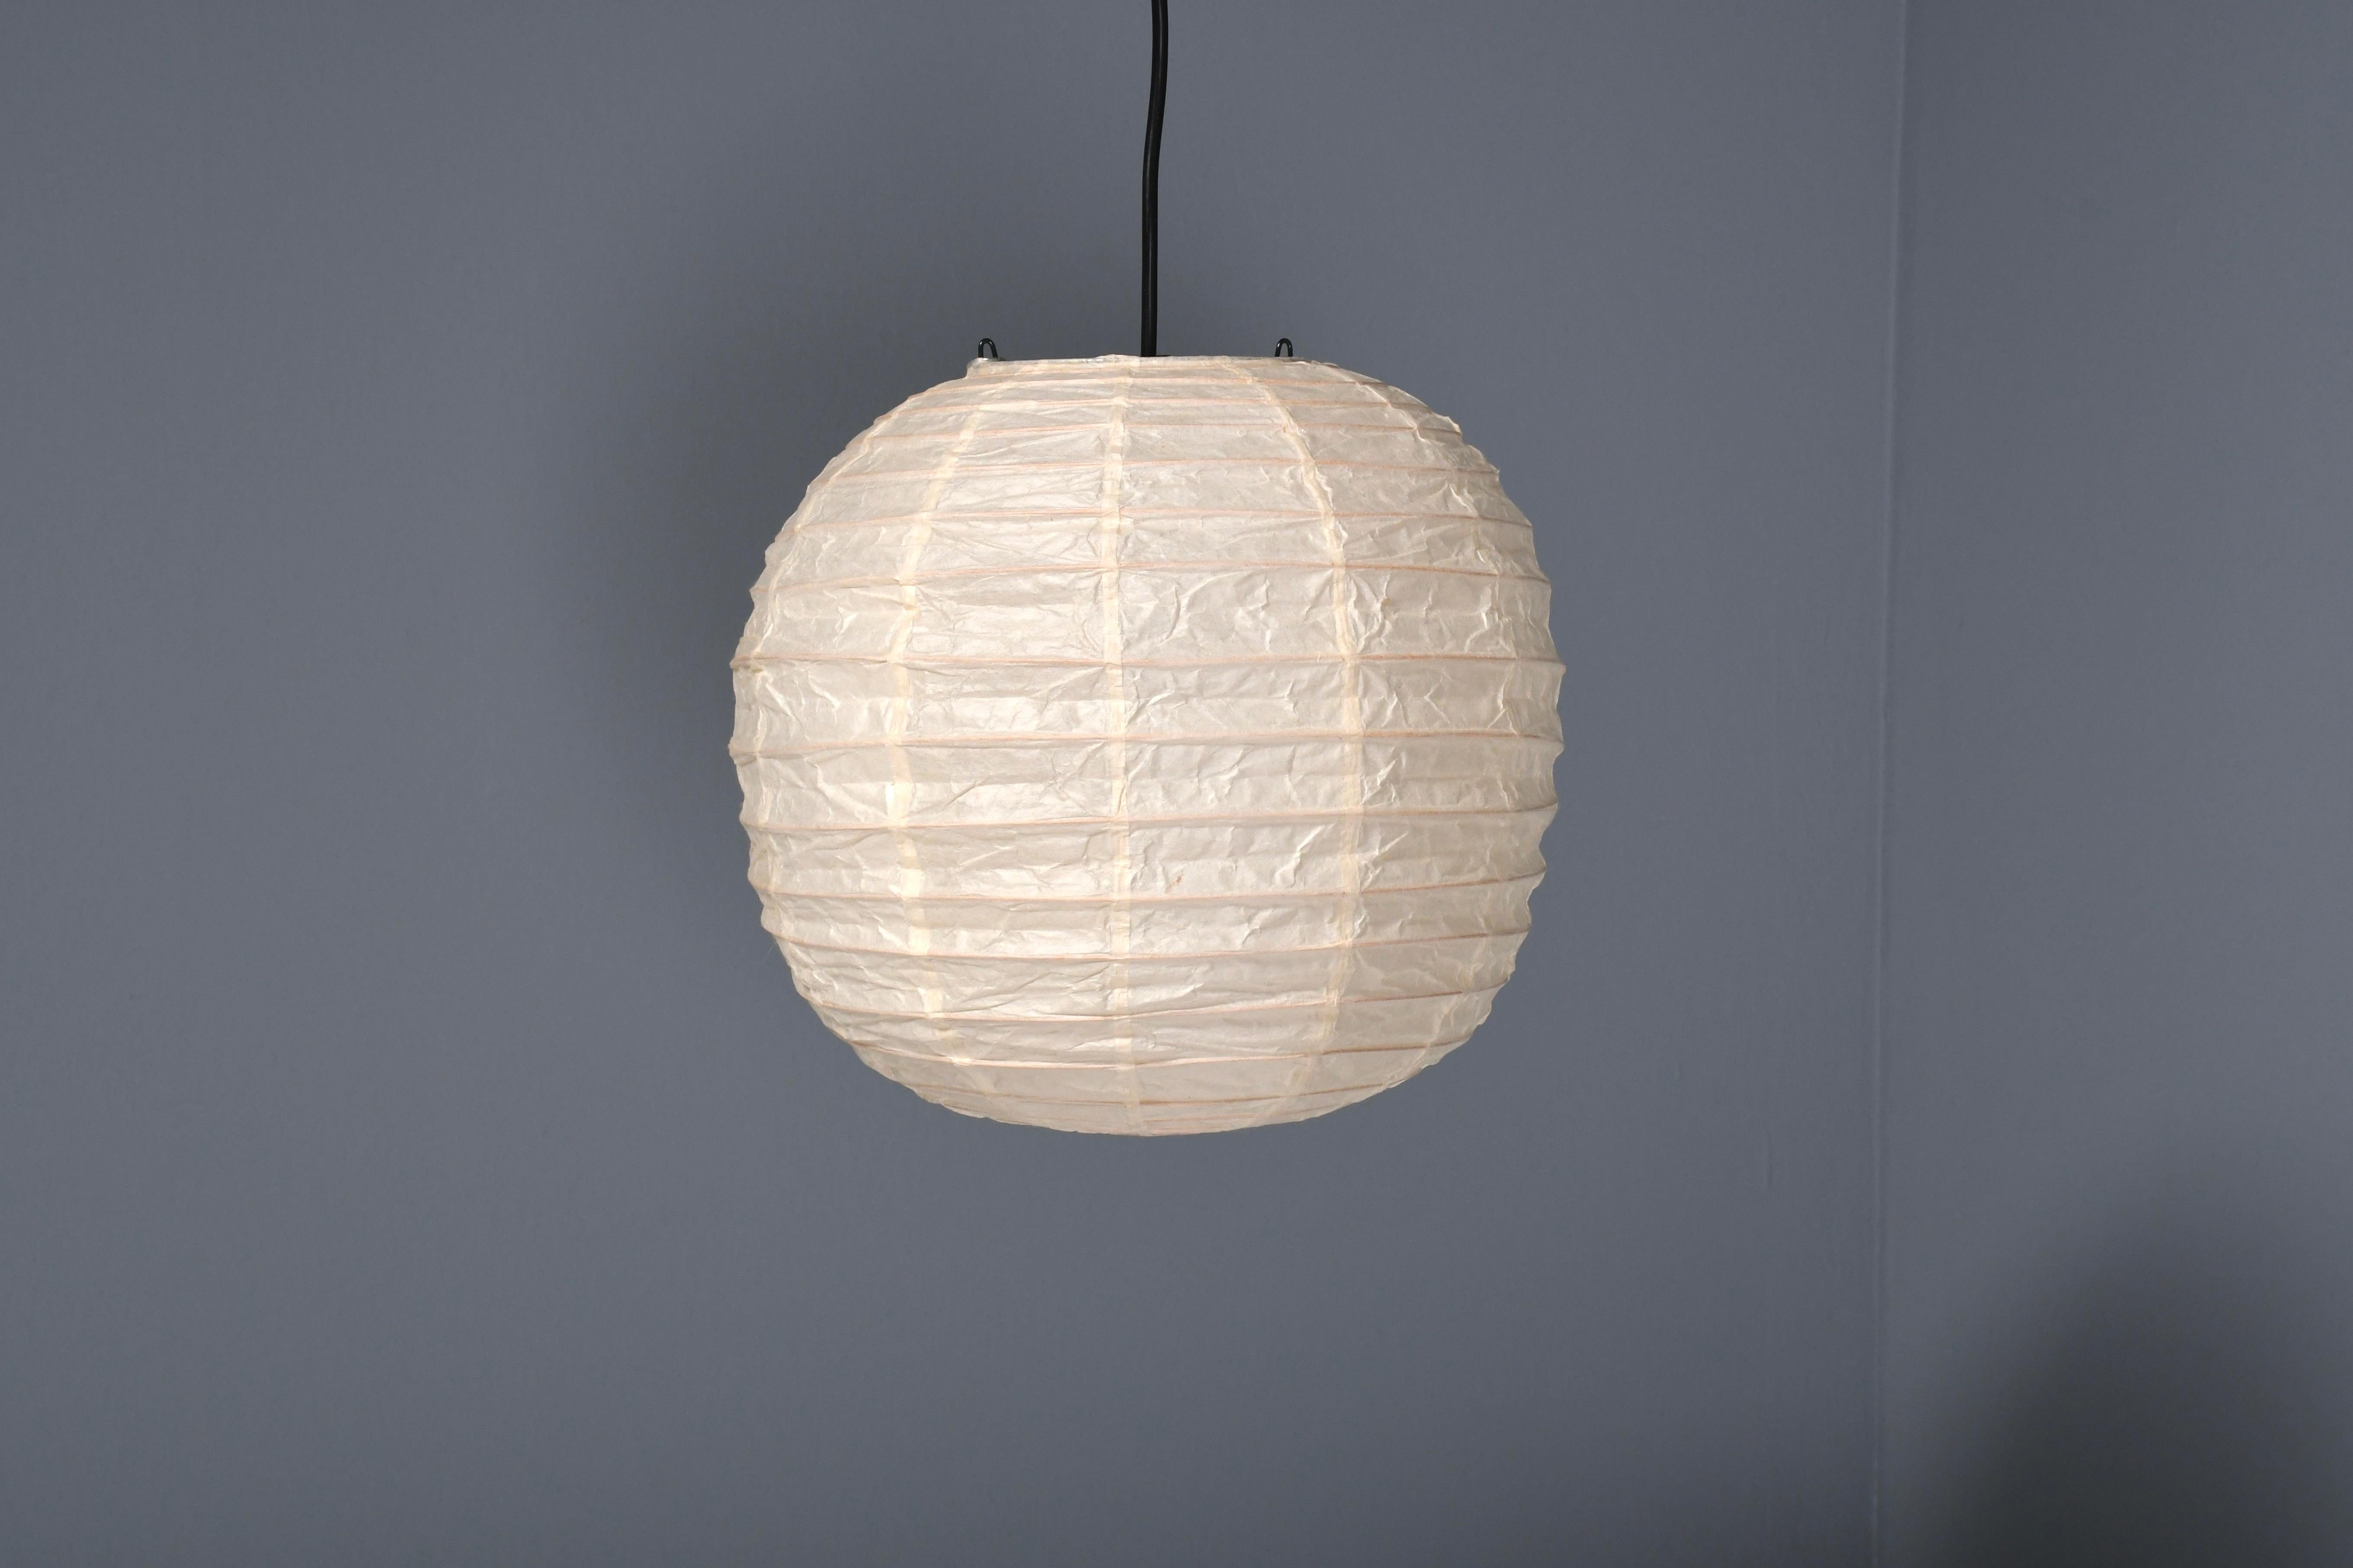 Frühe 30D Akari Lampe in ausgezeichnetem Zustand. 

Entworfen von Isamu Noguchi im Jahr 1951 Hergestellt von Ozeki & Co, Ltd. 

Neuer alter Lagerbestand, 4 Artikel verfügbar!

Das Modell 30D ist ein kugelförmiger Anhänger aus der